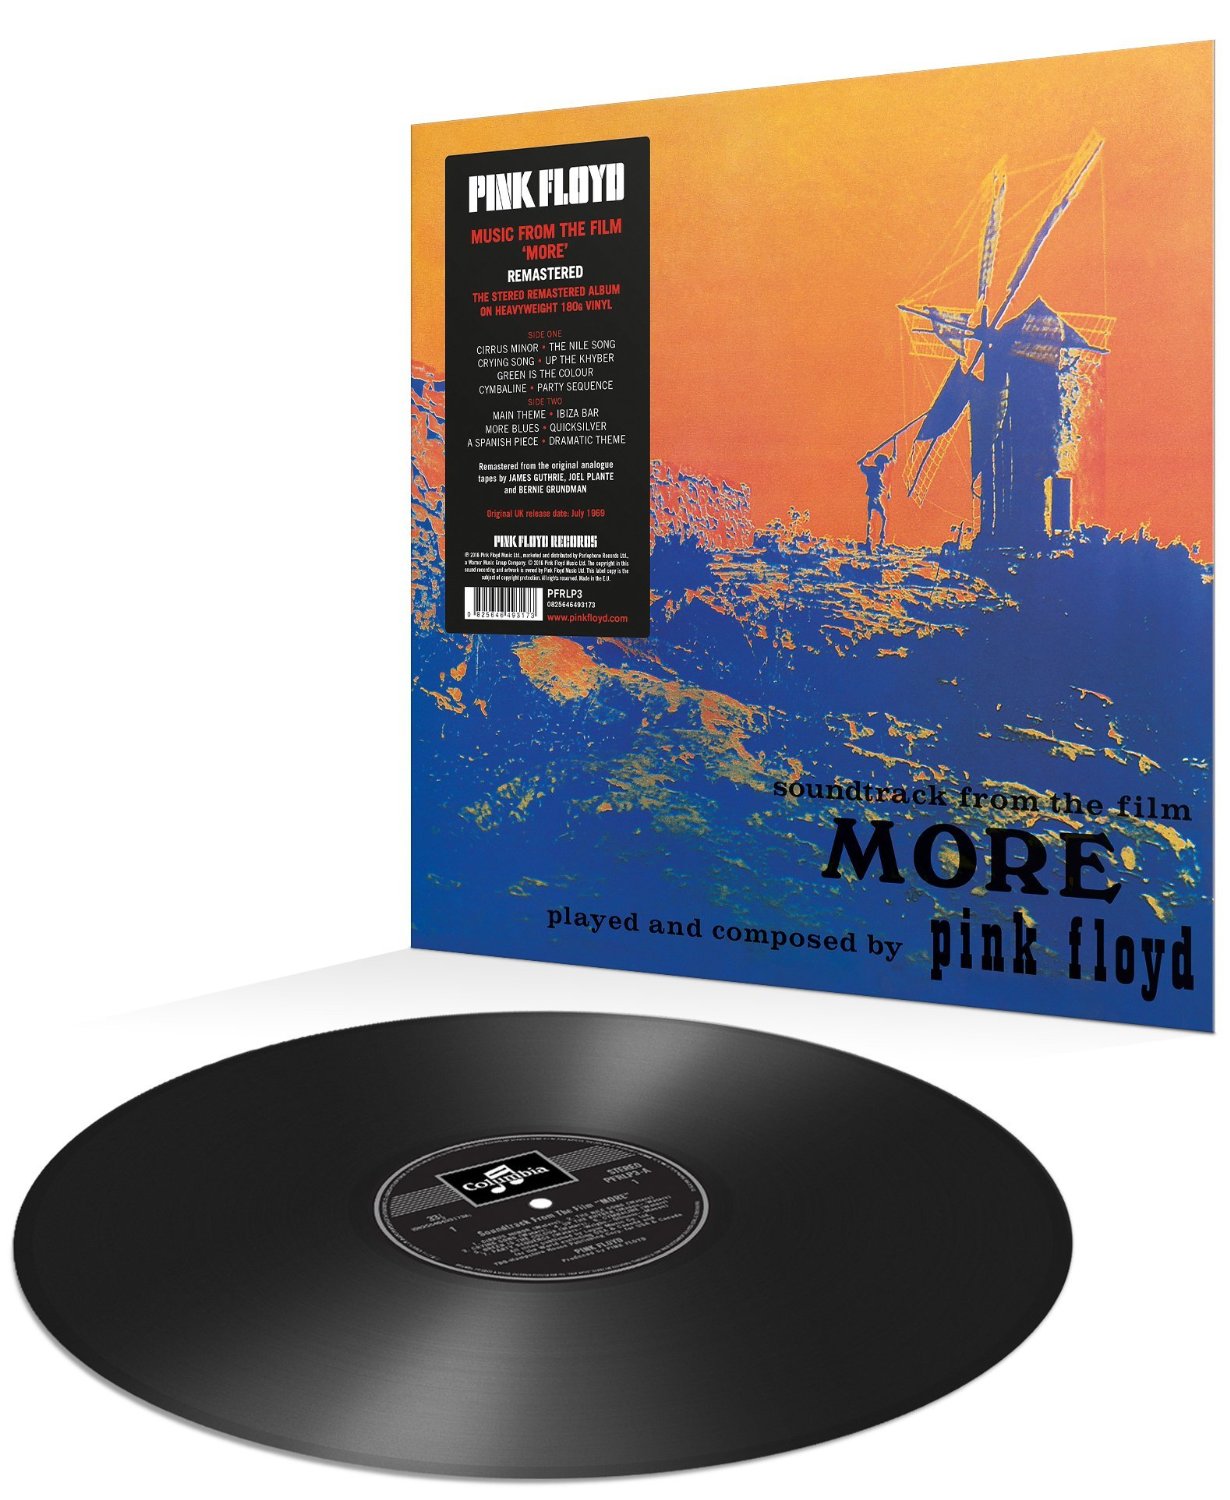 Pink Floyd "More" Vinyl